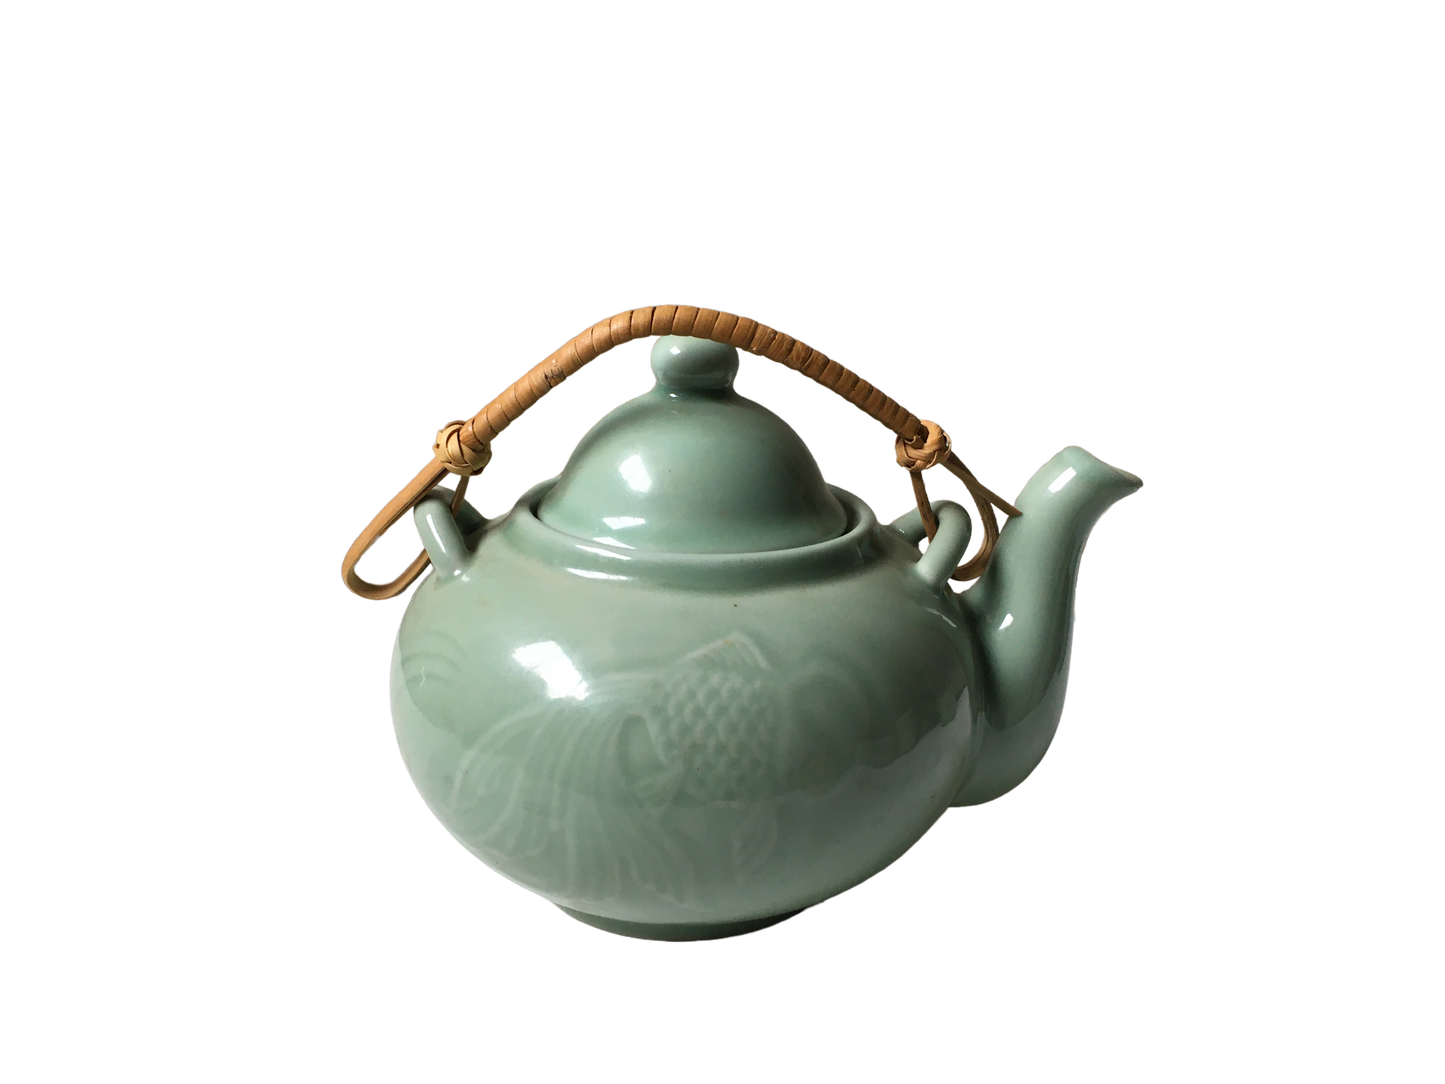 Fine China tea set